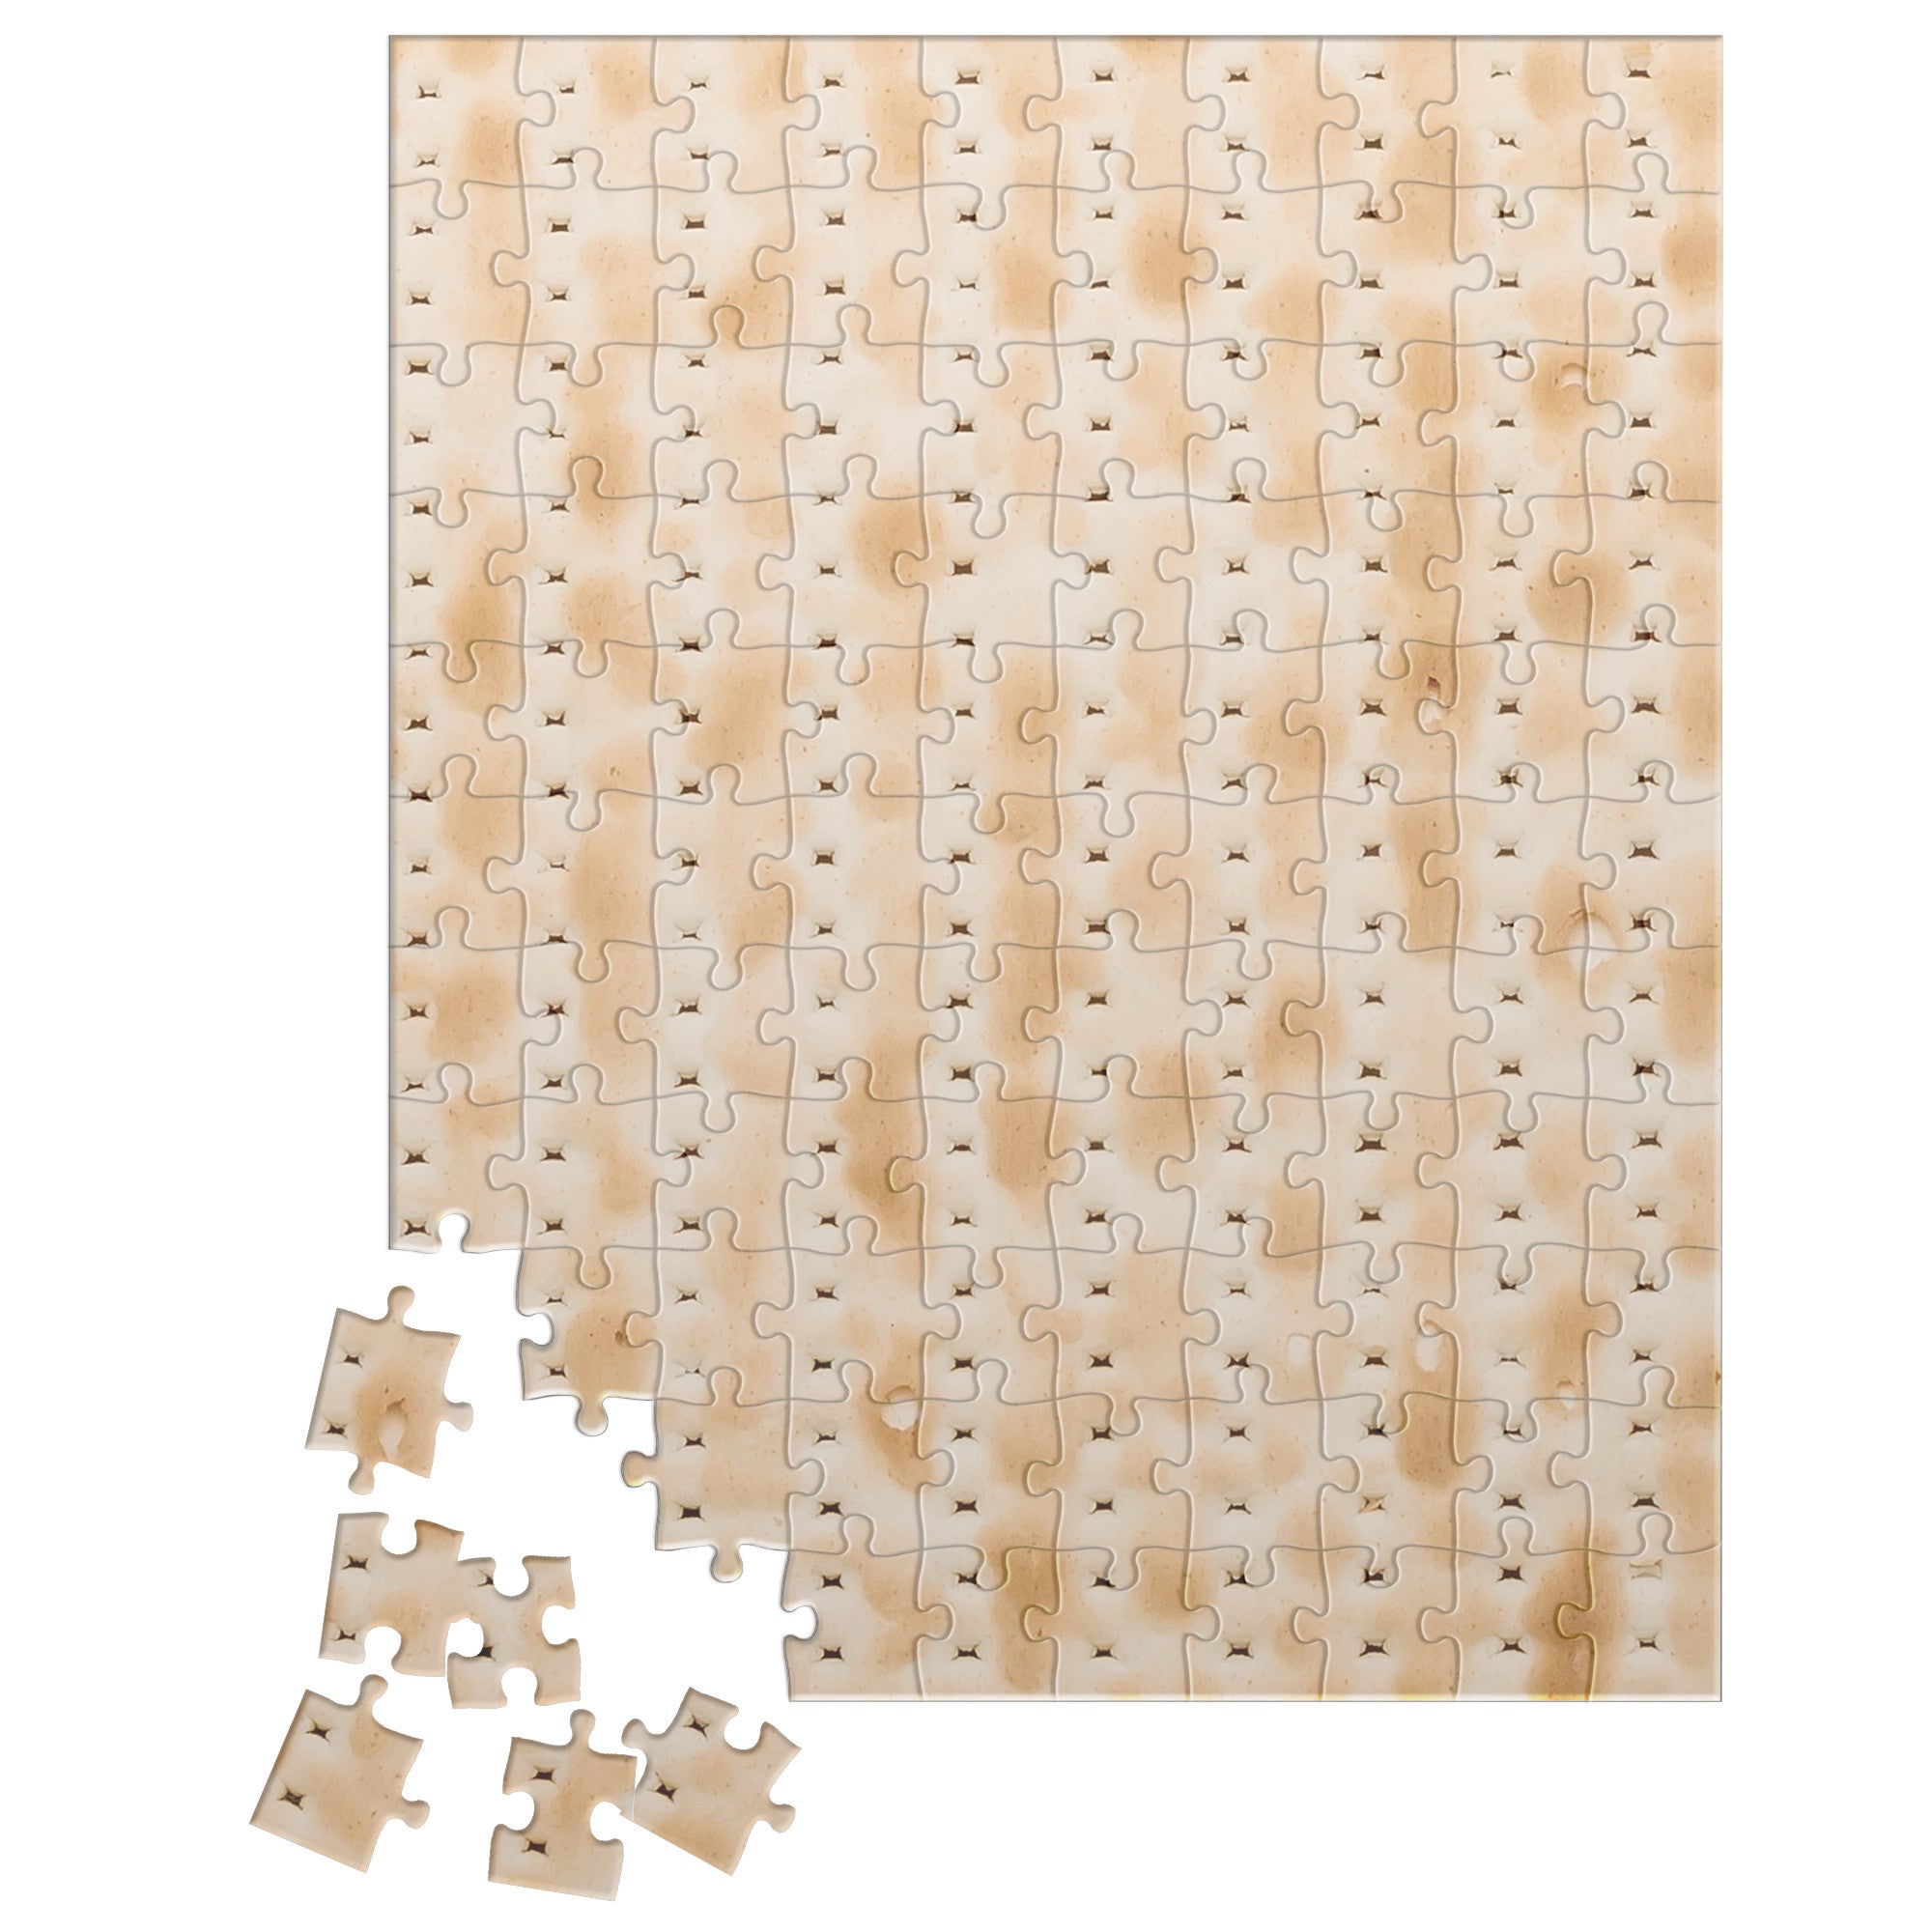 Passover Matzah Print Puzzle